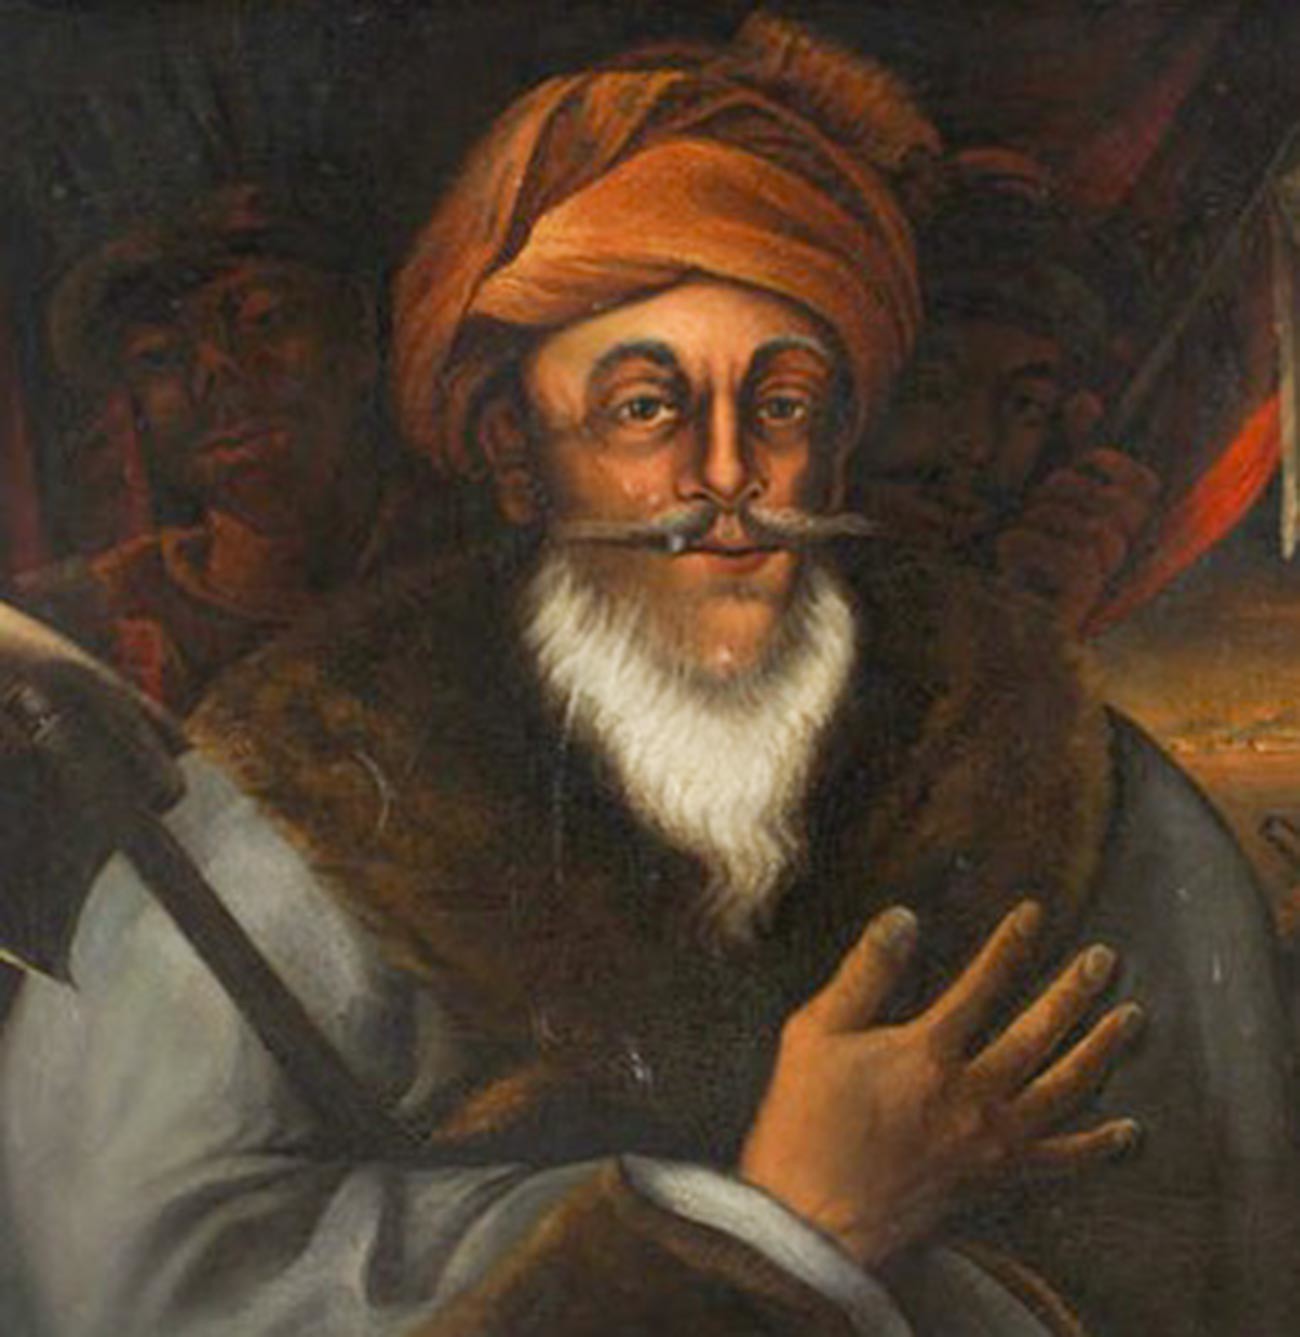 Il comandante ottomano Ahmad Pasha al-Jazzar